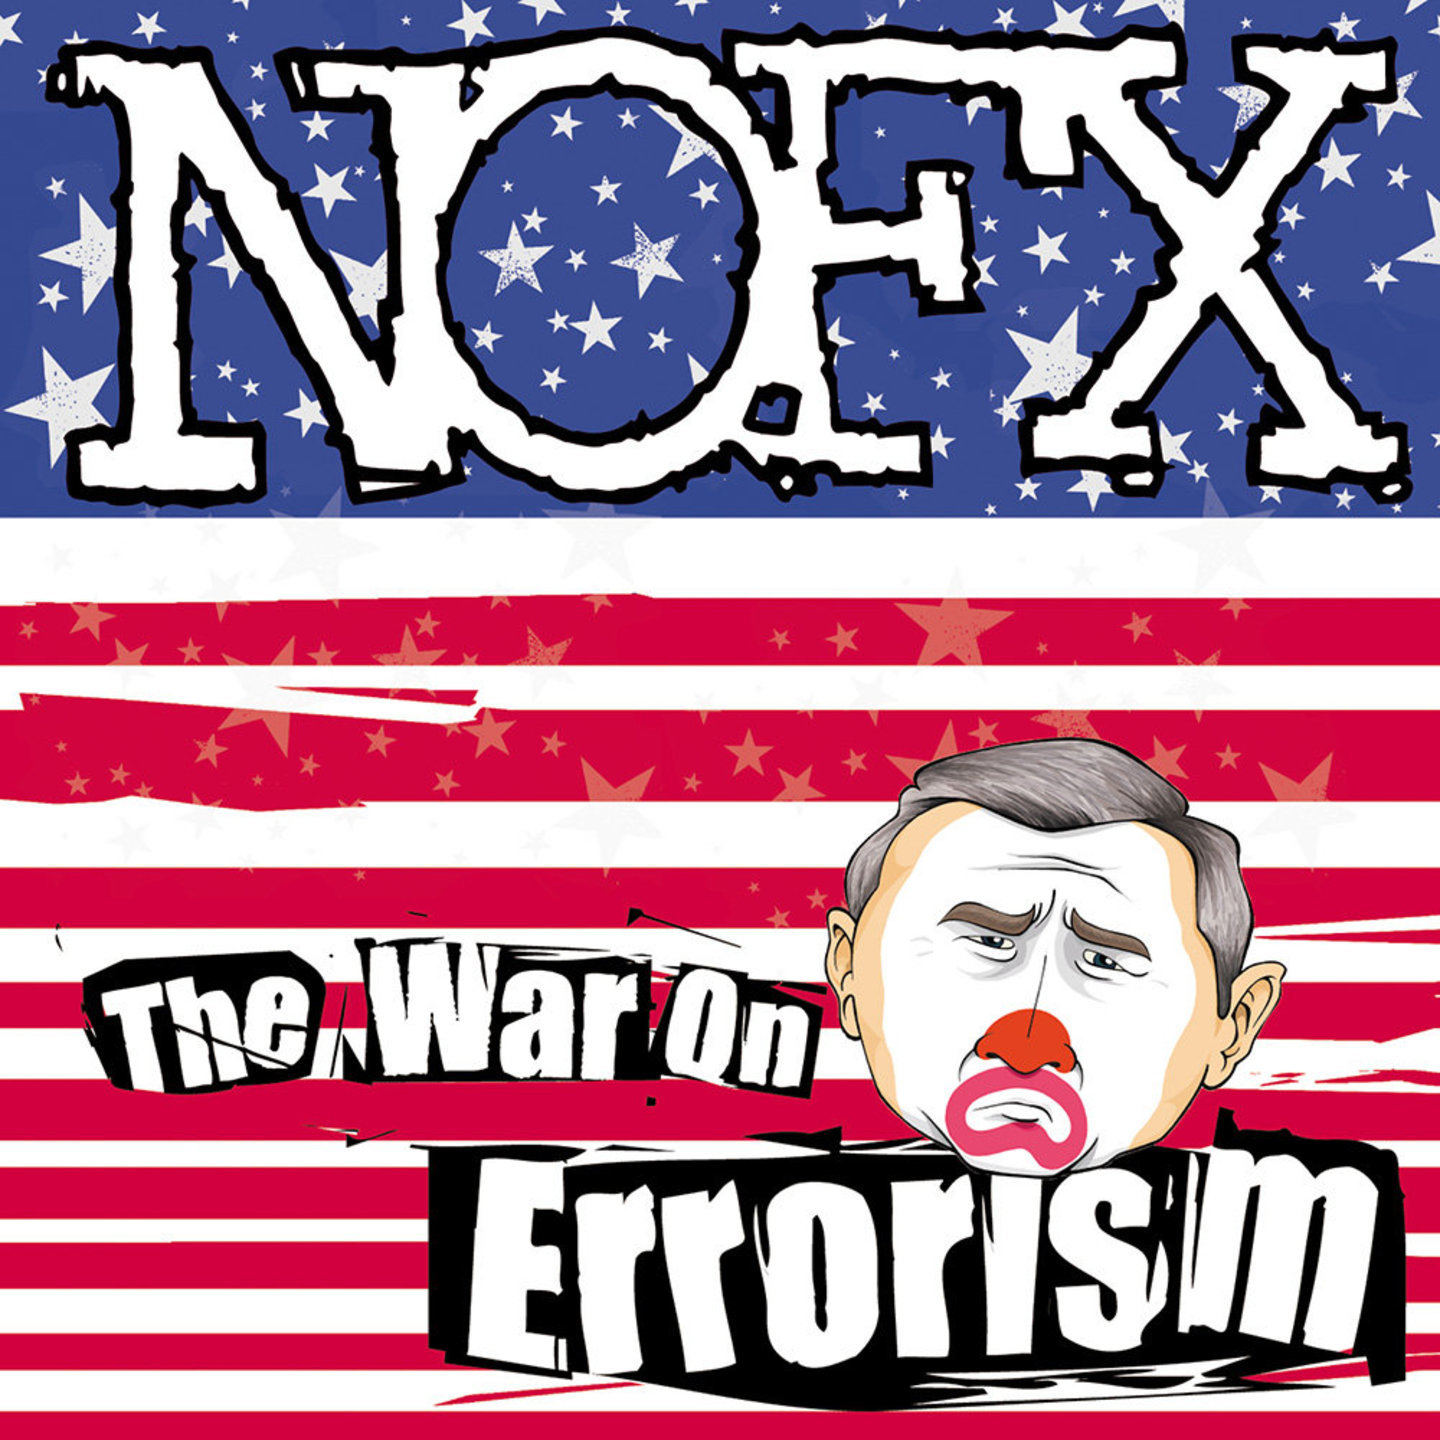 NOFX - The War On Errorism LP